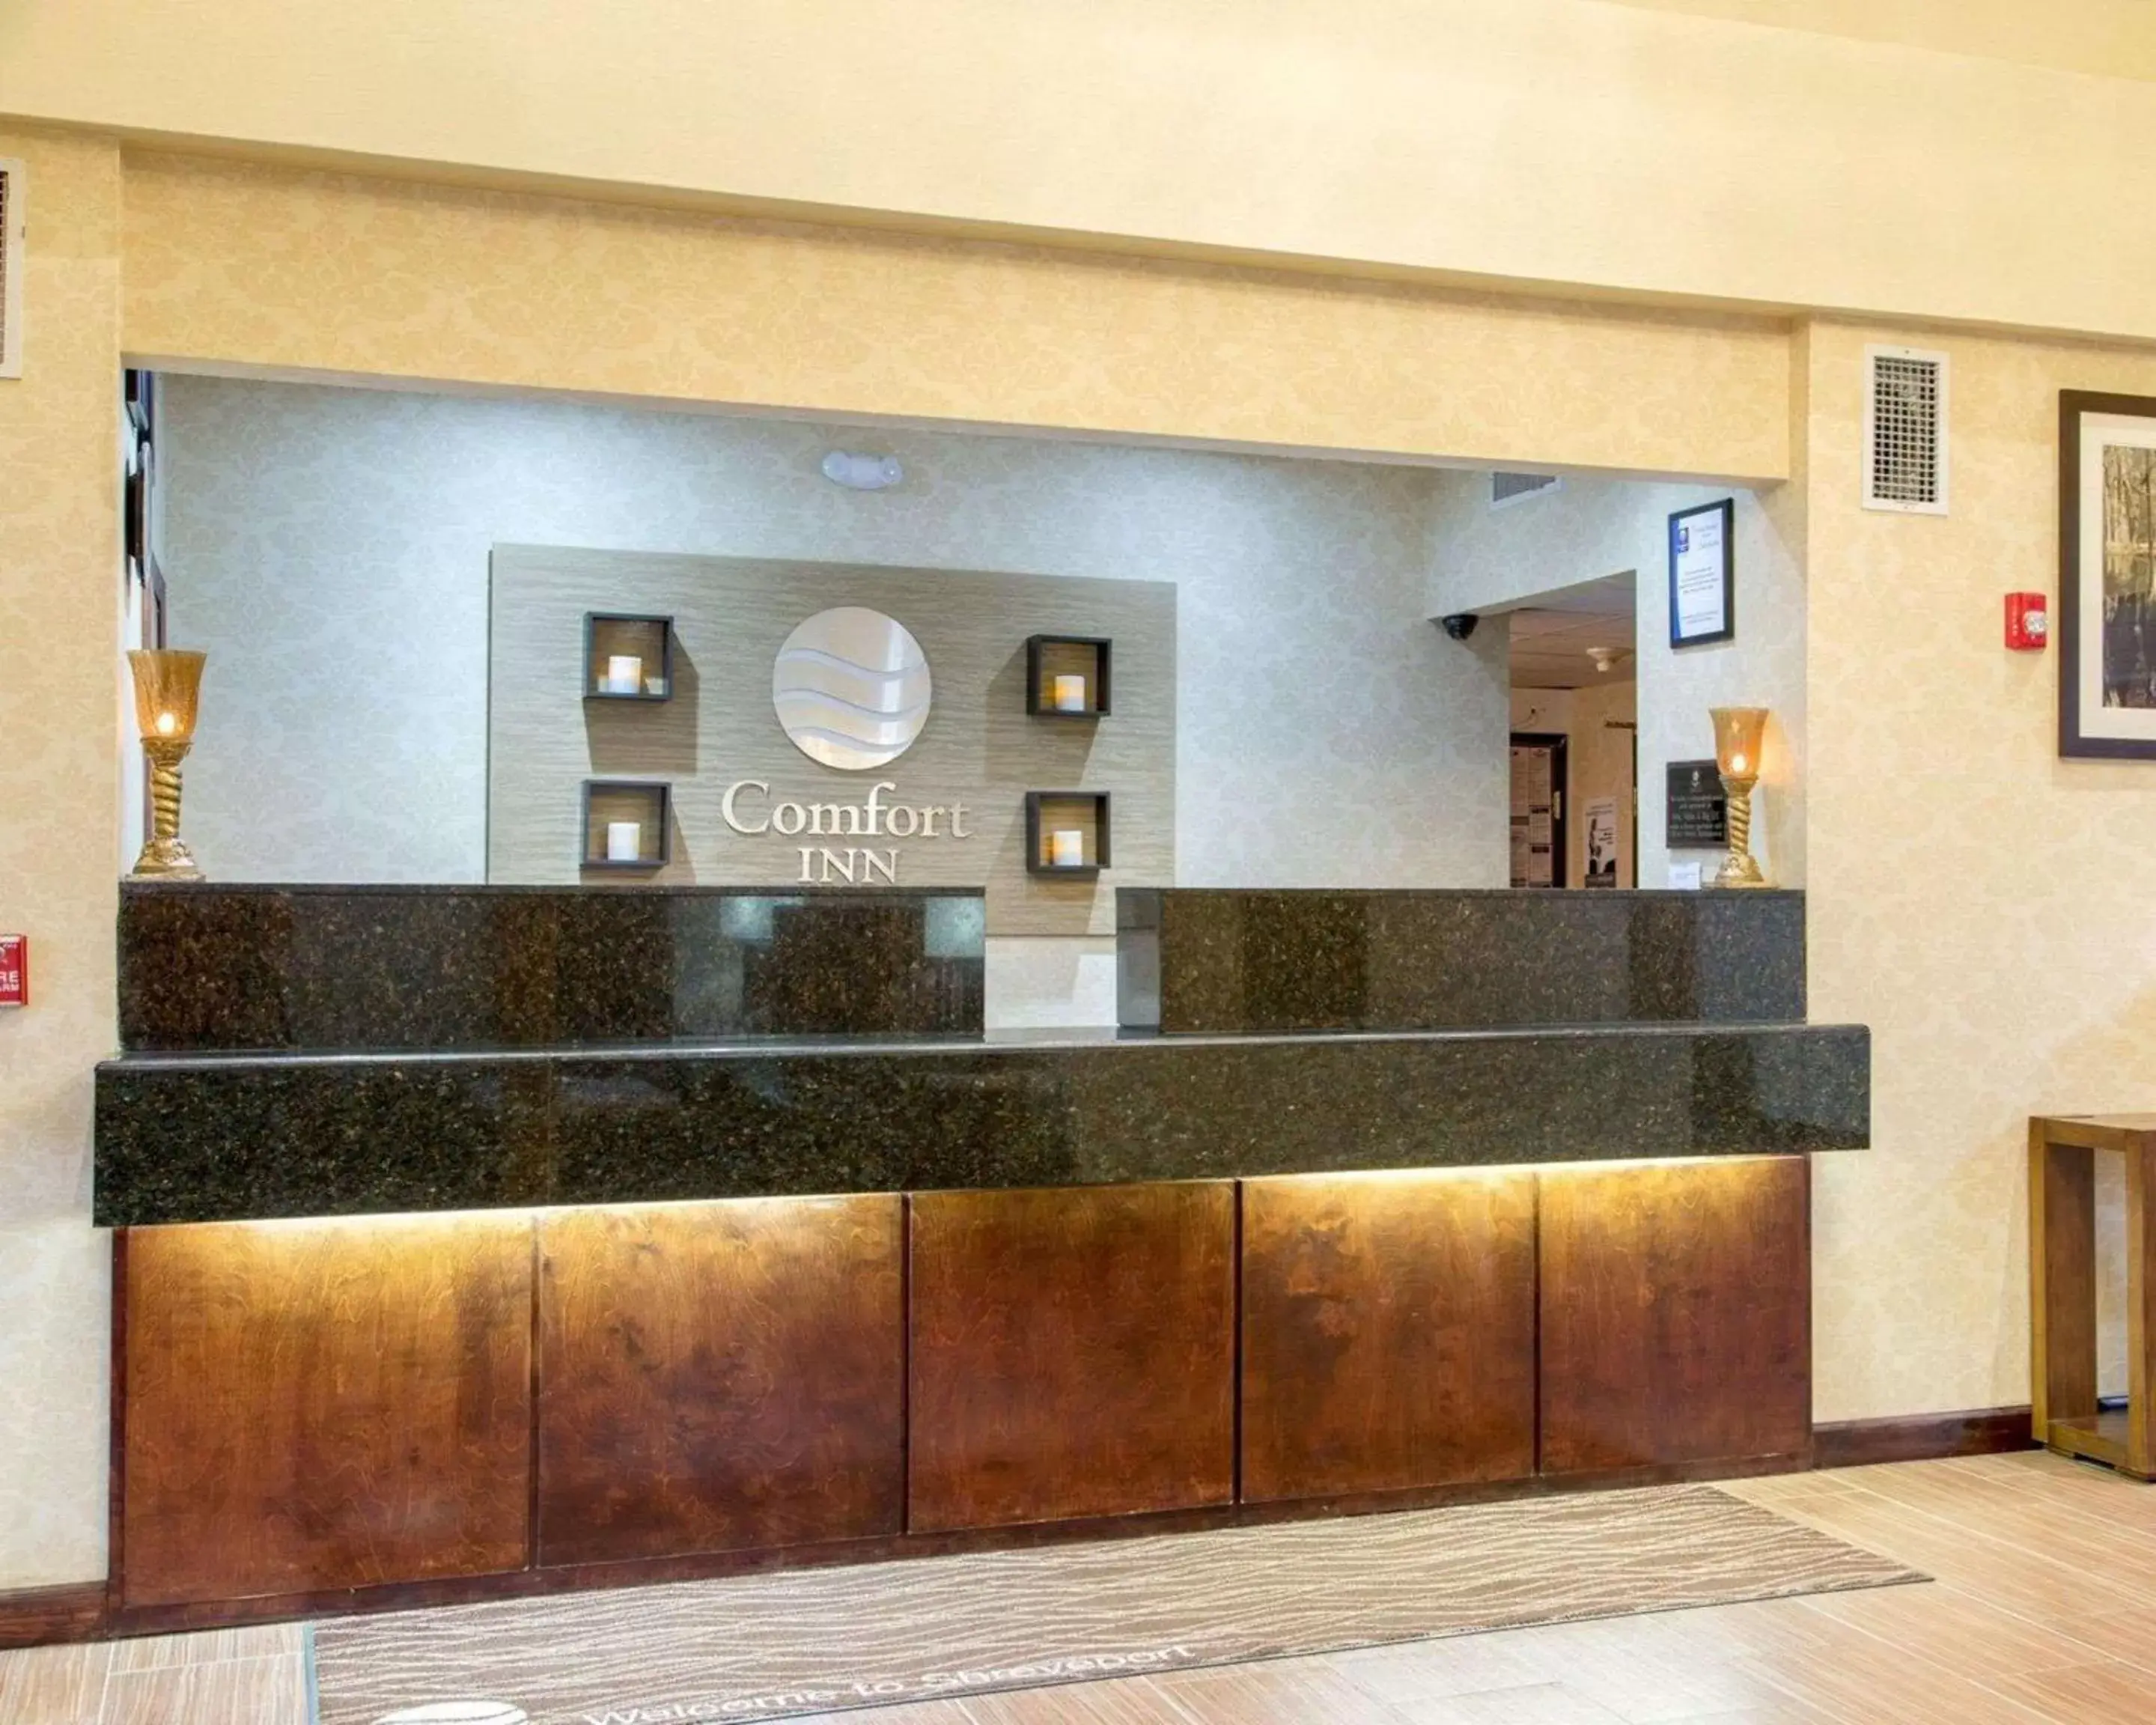 Lobby or reception, Lobby/Reception in Comfort Inn Shreveport I-49